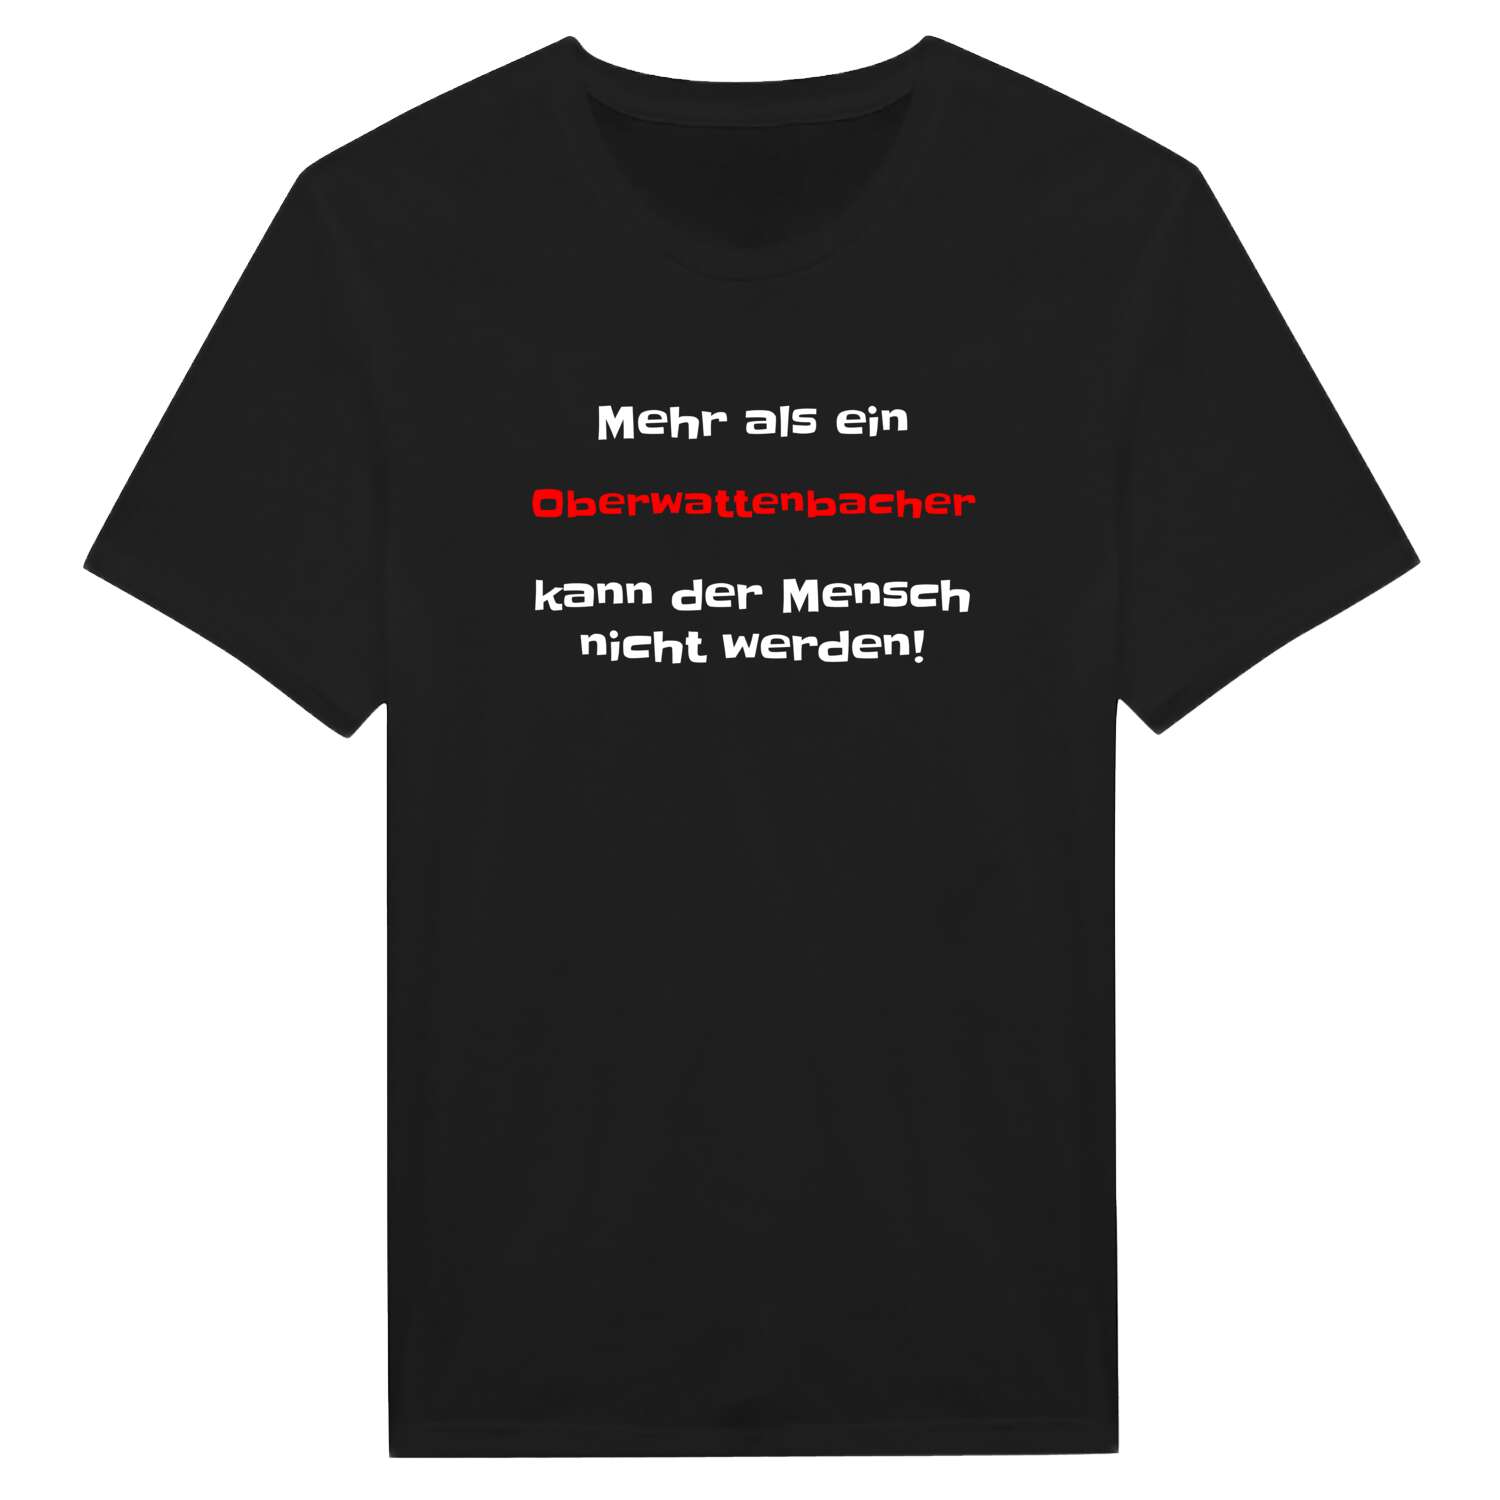 Oberwattenbach T-Shirt »Mehr als ein«